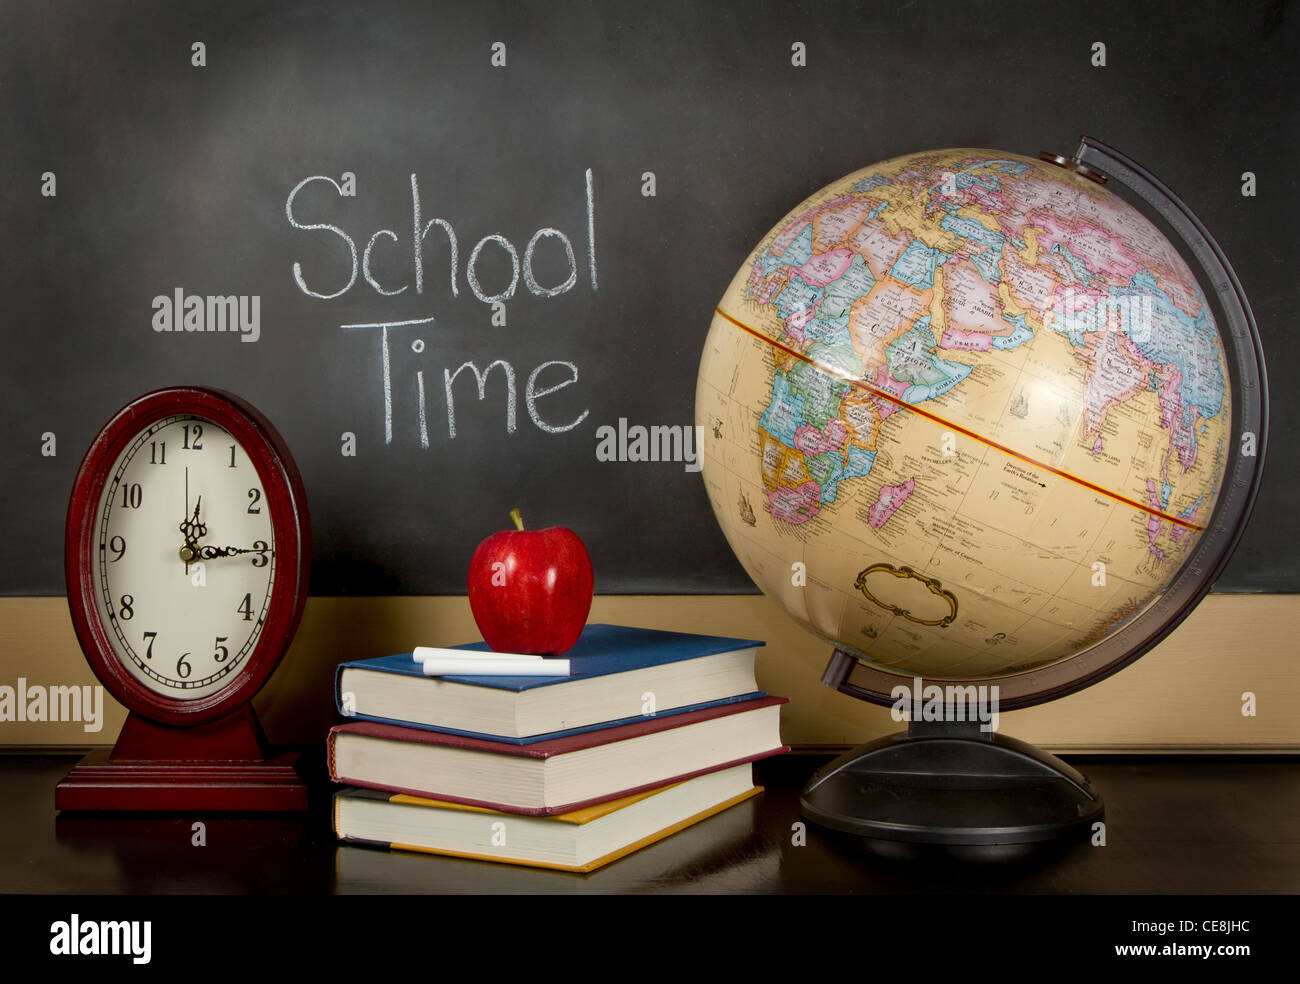 eine Tafel mit den Worten der Schule Zeit geschrieben, eine Uhr, Bücher,  Apfel, Kreide und eine Kugel auf einem Lehrer Schreibtisch sitzen  Stockfotografie - Alamy